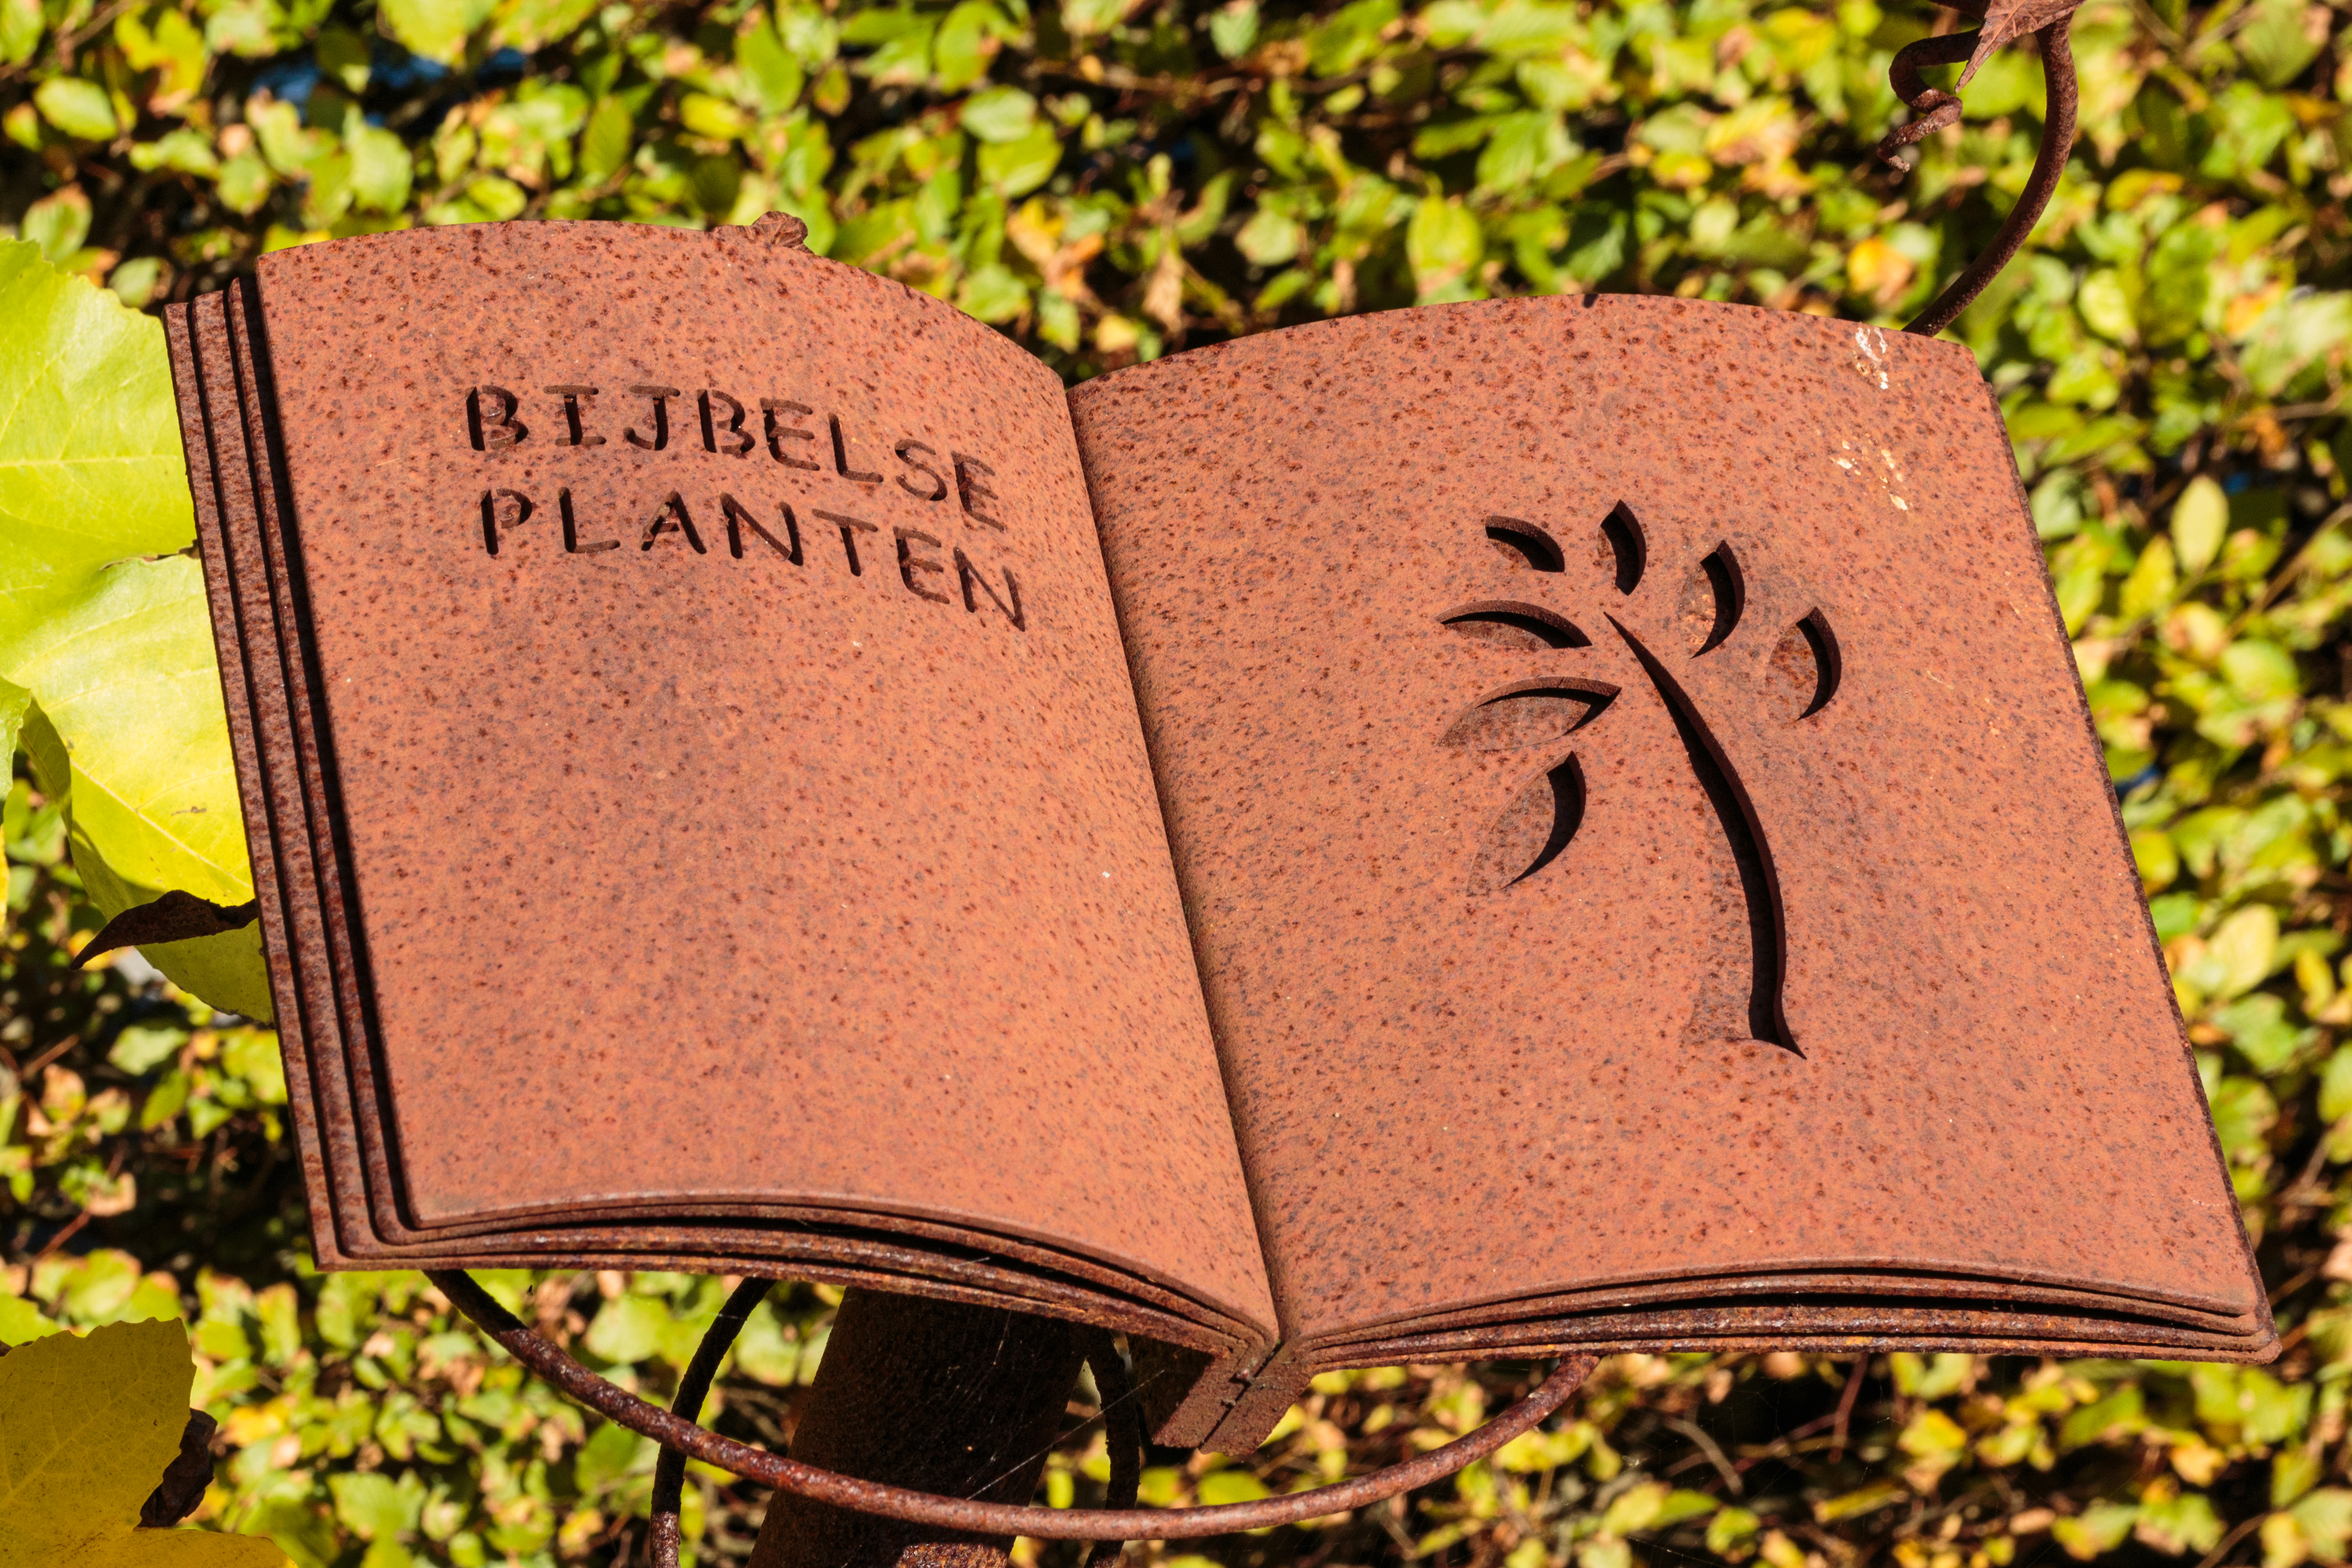 Bijbels plantenboek van cordes staal. Locatie, De Kruidhof Buitenpost 01